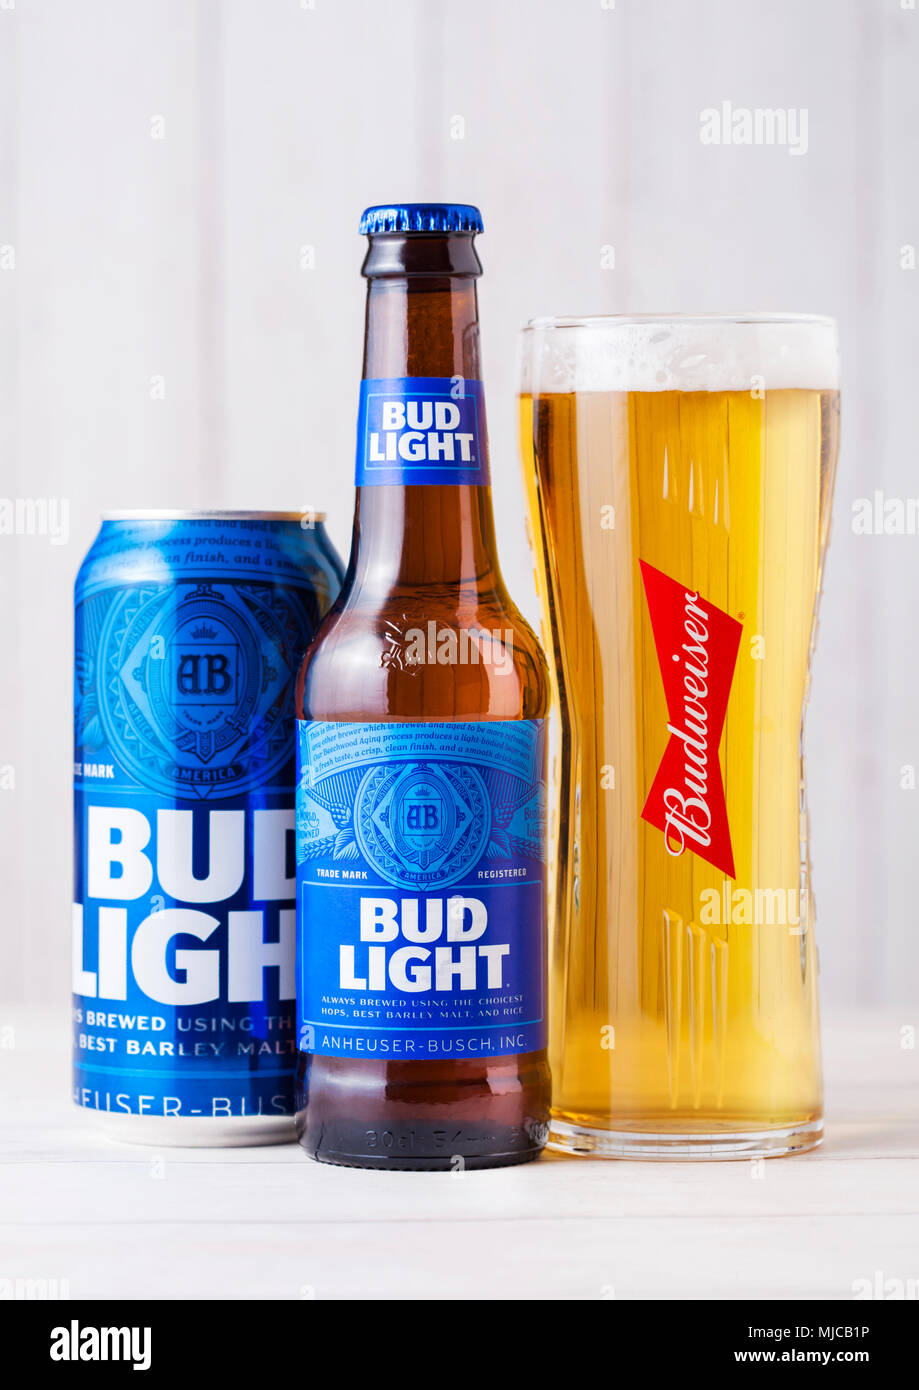 LONDON, Großbritannien - 27 April, 2018: Flasche Budweiser Bud Light Bier  auf Holz- Hintergrund mit Label, ein amerikanisches Lager erst im Jahr 1876  eingeführt Stockfotografie - Alamy